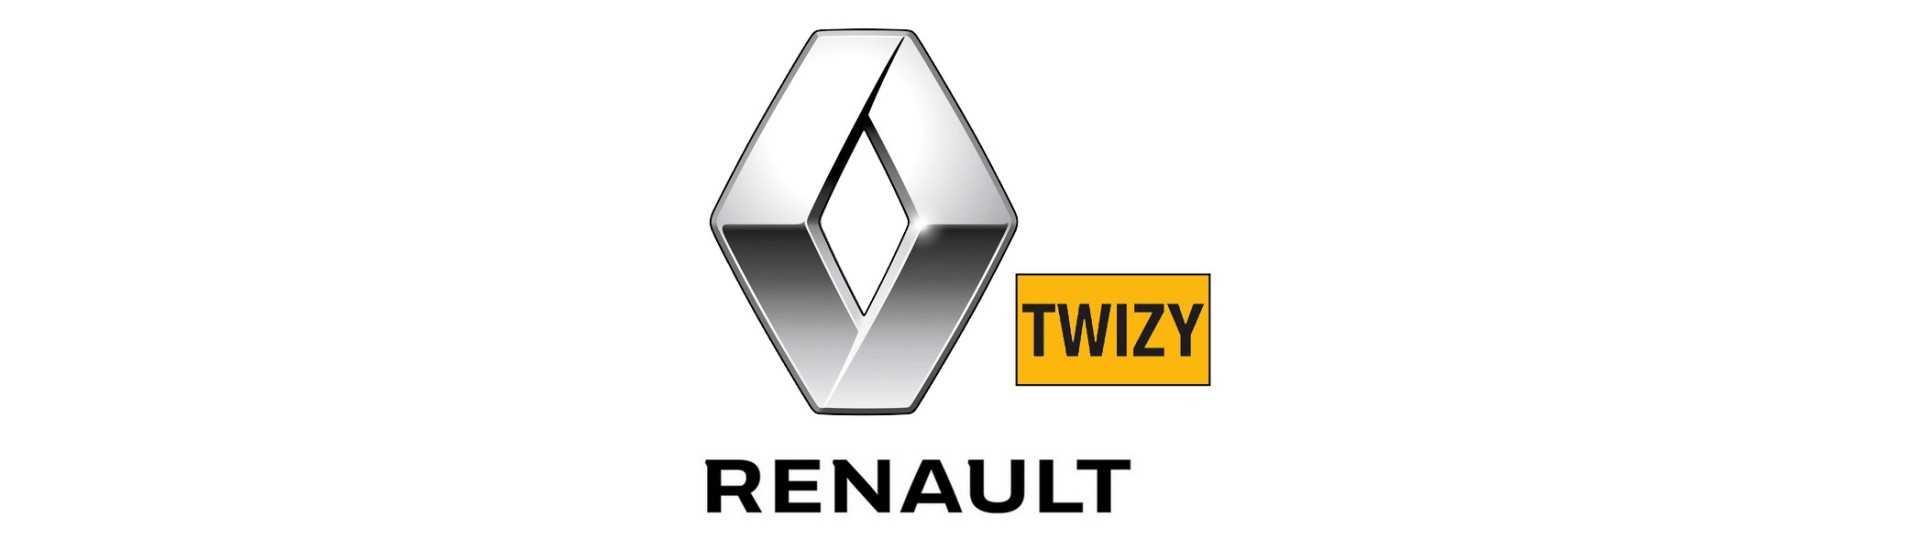 Triangolo anteriore al miglior prezzo per auto senza permesso Renault Twizy